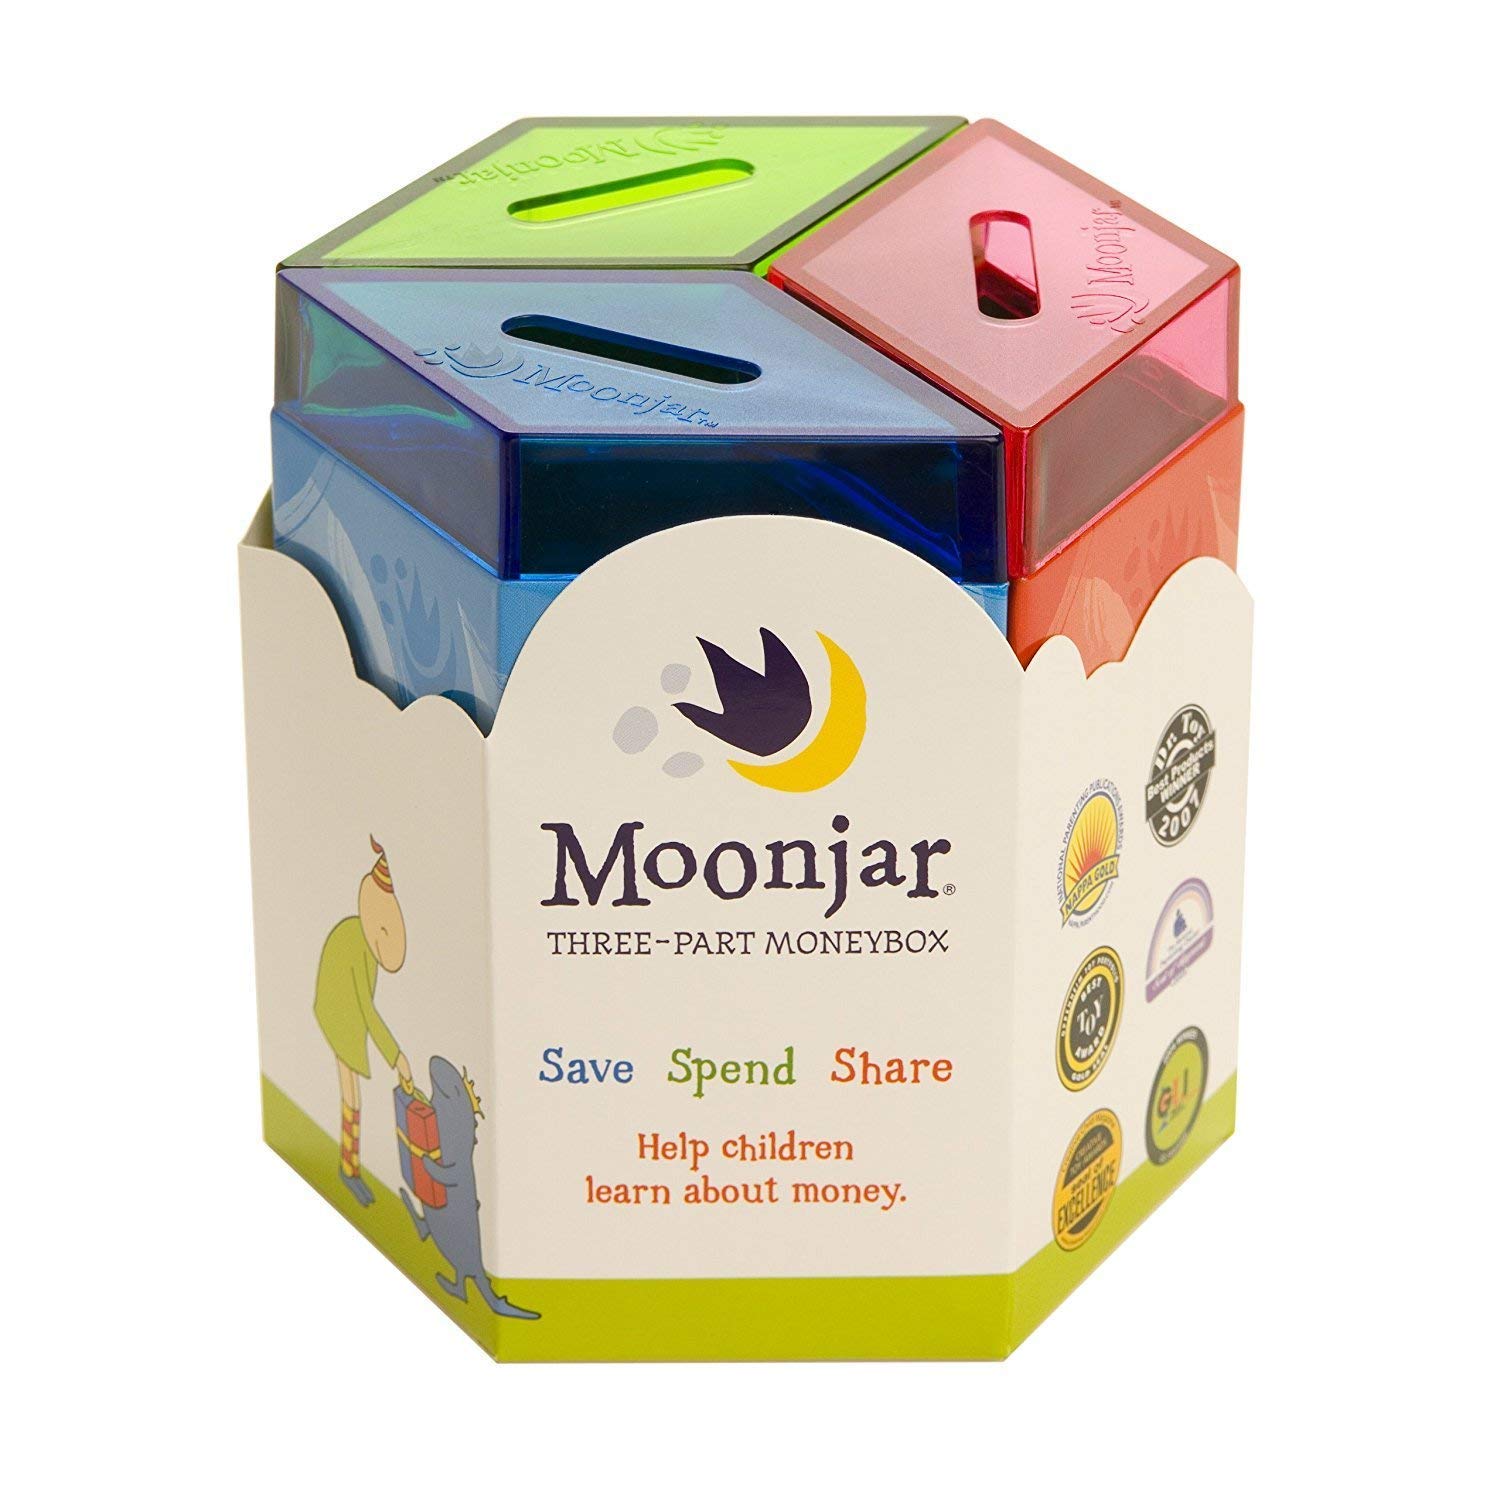 Moonjar Classic Save Spend Share 3-Part Tin Moneybox Bank